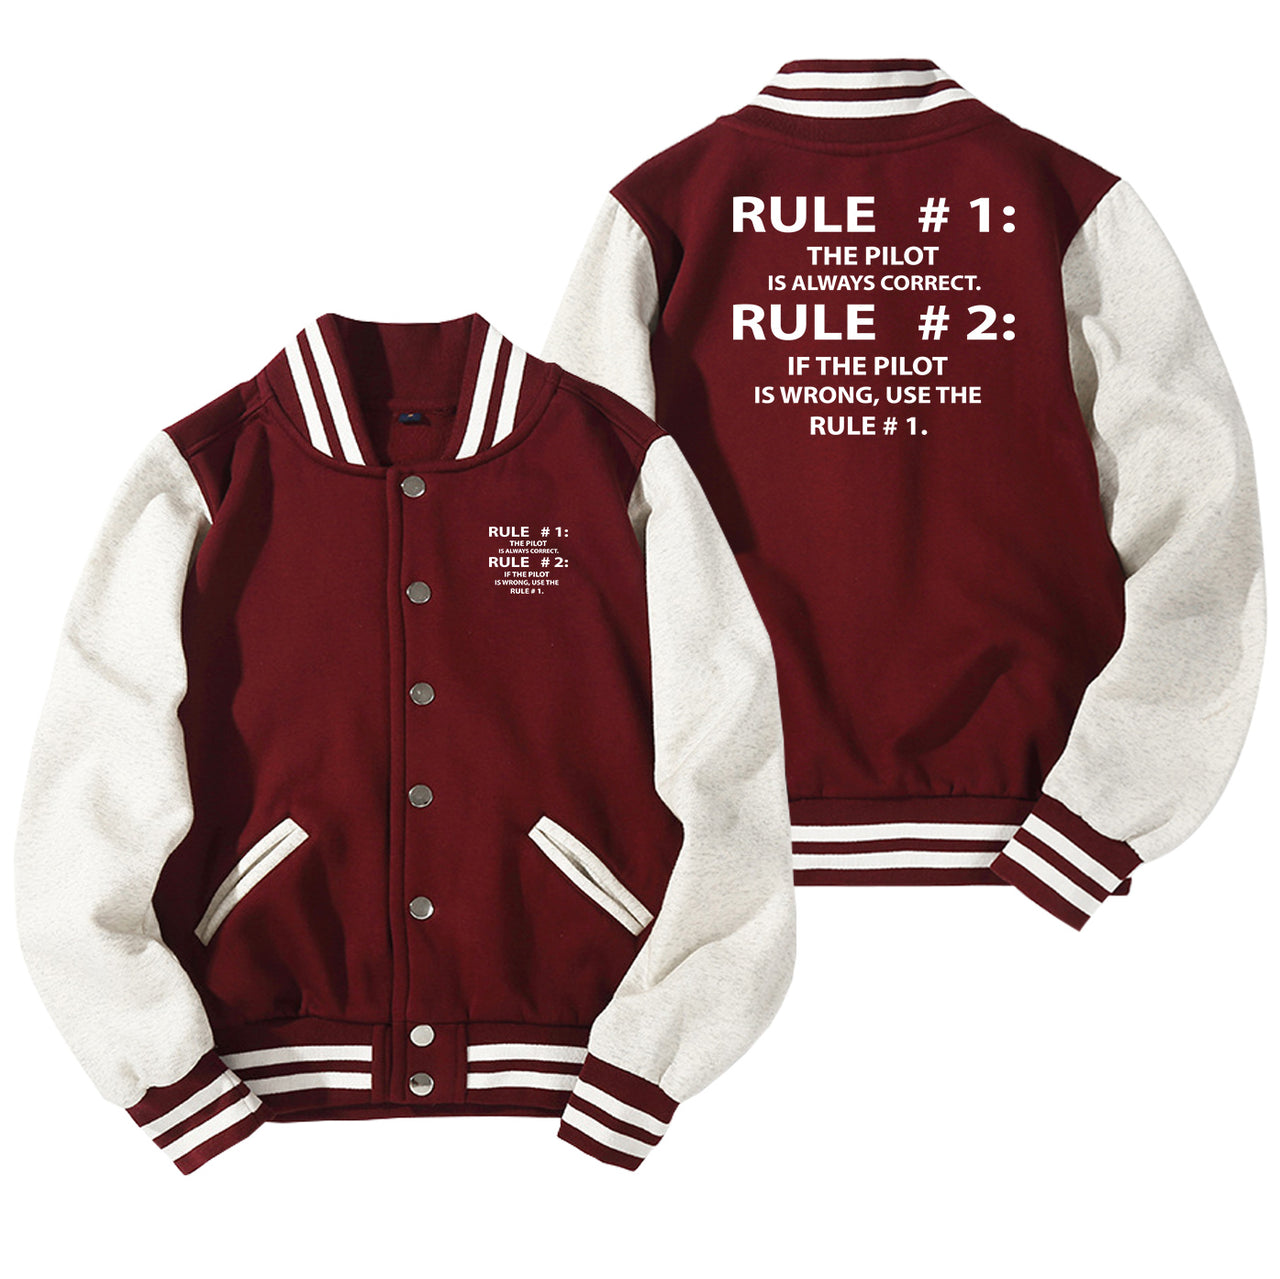 Rule 1 - Pilot is Always Correct Designed Baseball Style Jackets